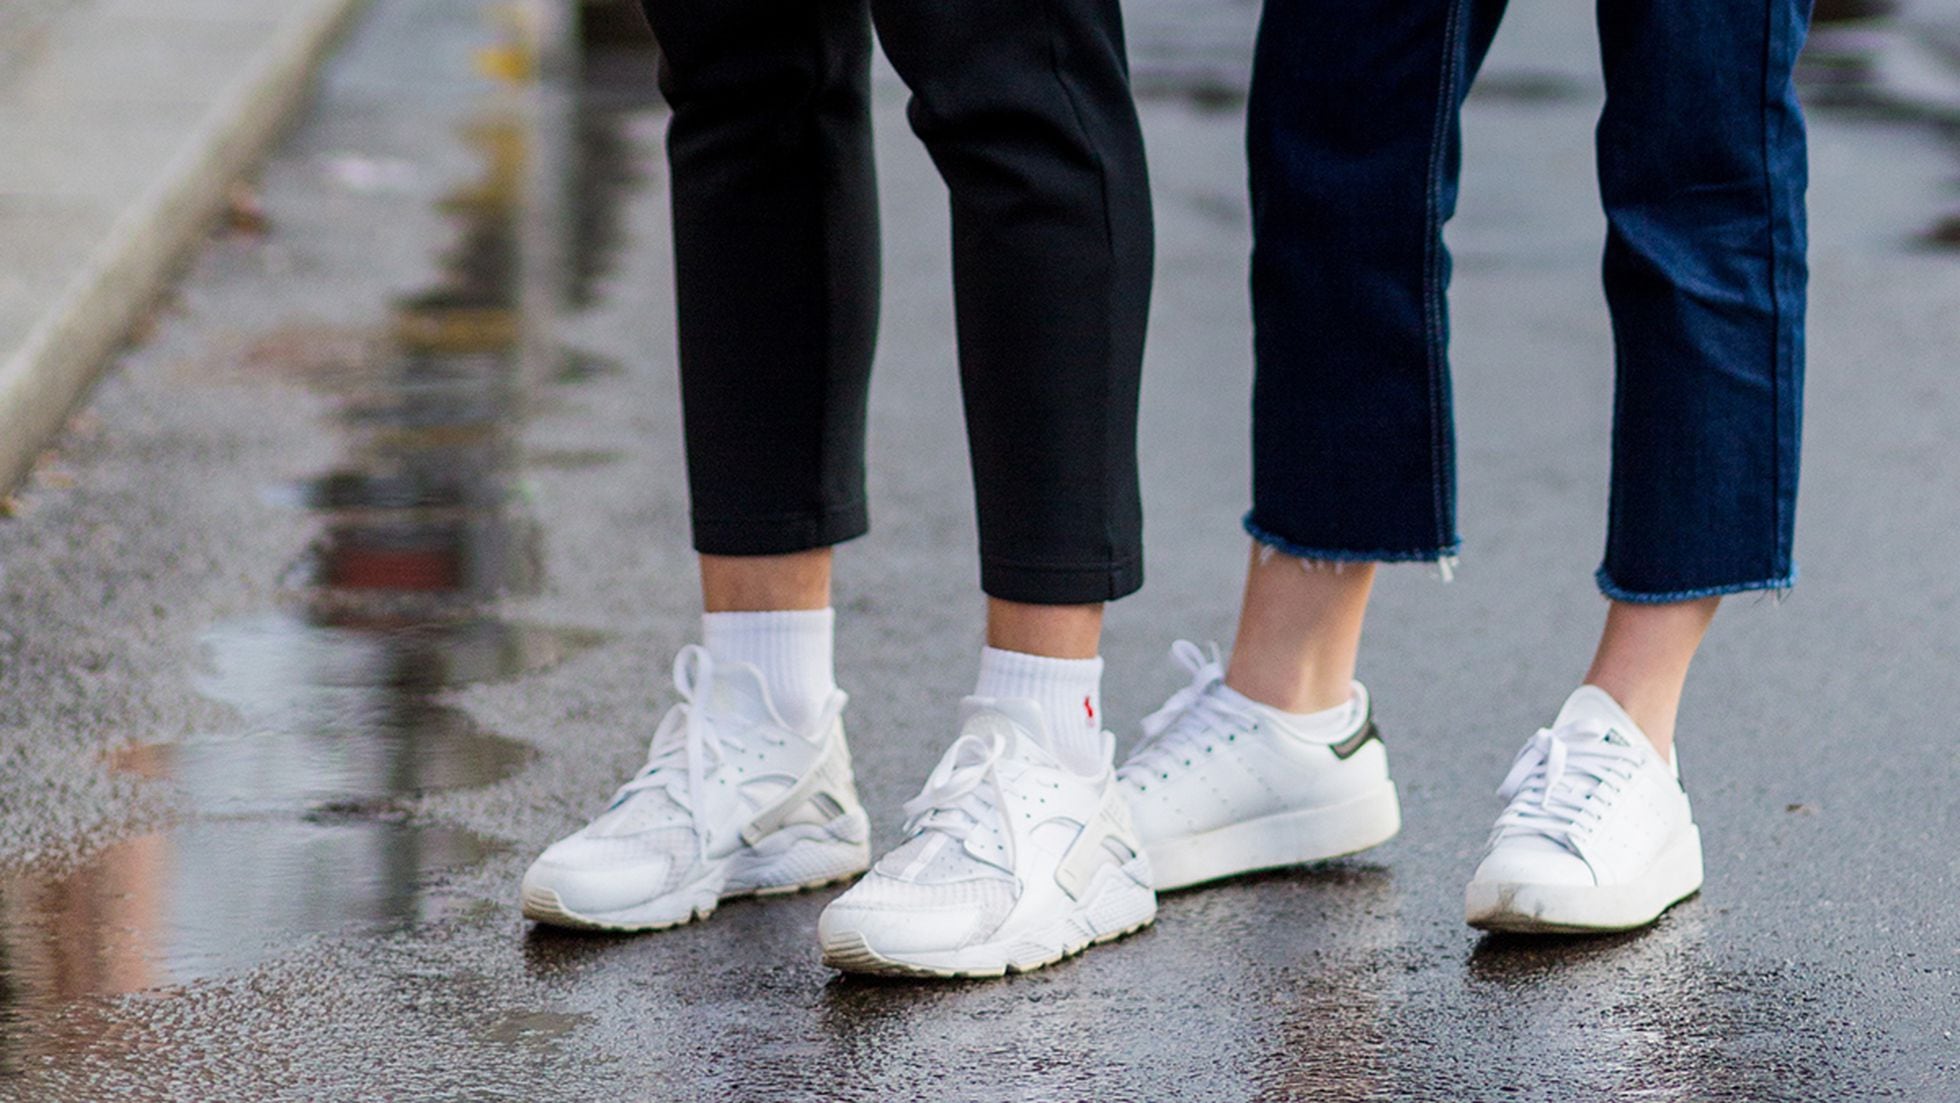 Desgracia Repelente estornudar Converse, Vans o Nike: diez zapatillas para él o ella, que marcan estilo,  rebajadas hasta un 50% | Escaparate | EL PAÍS